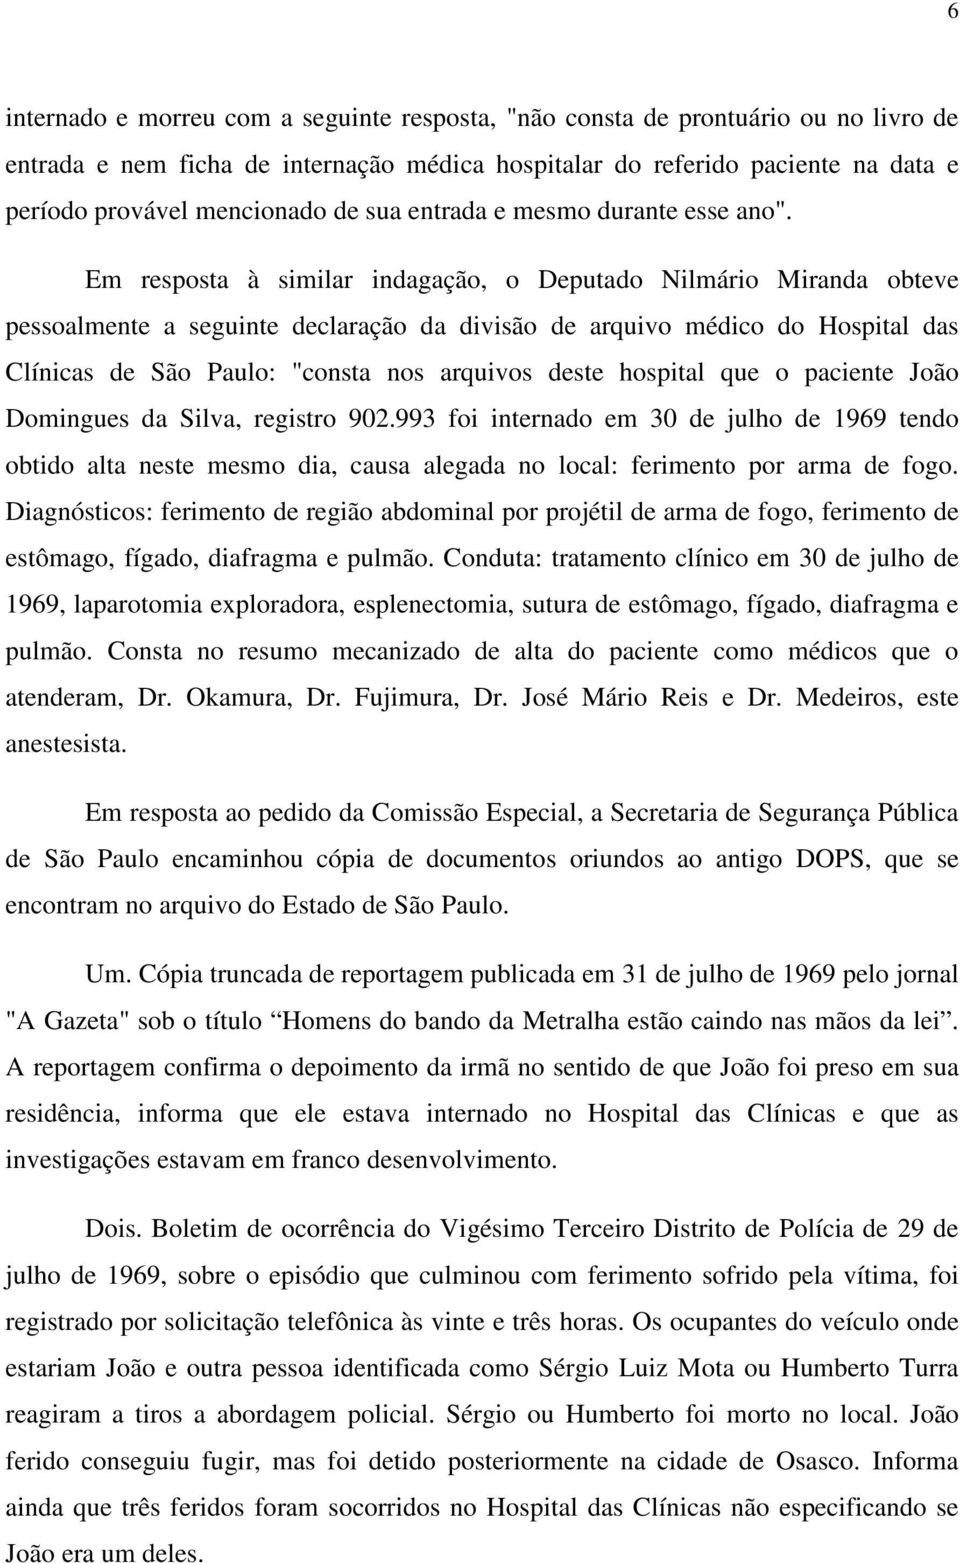 Em resposta à similar indagação, o Deputado Nilmário Miranda obteve pessoalmente a seguinte declaração da divisão de arquivo médico do Hospital das Clínicas de São Paulo: "consta nos arquivos deste